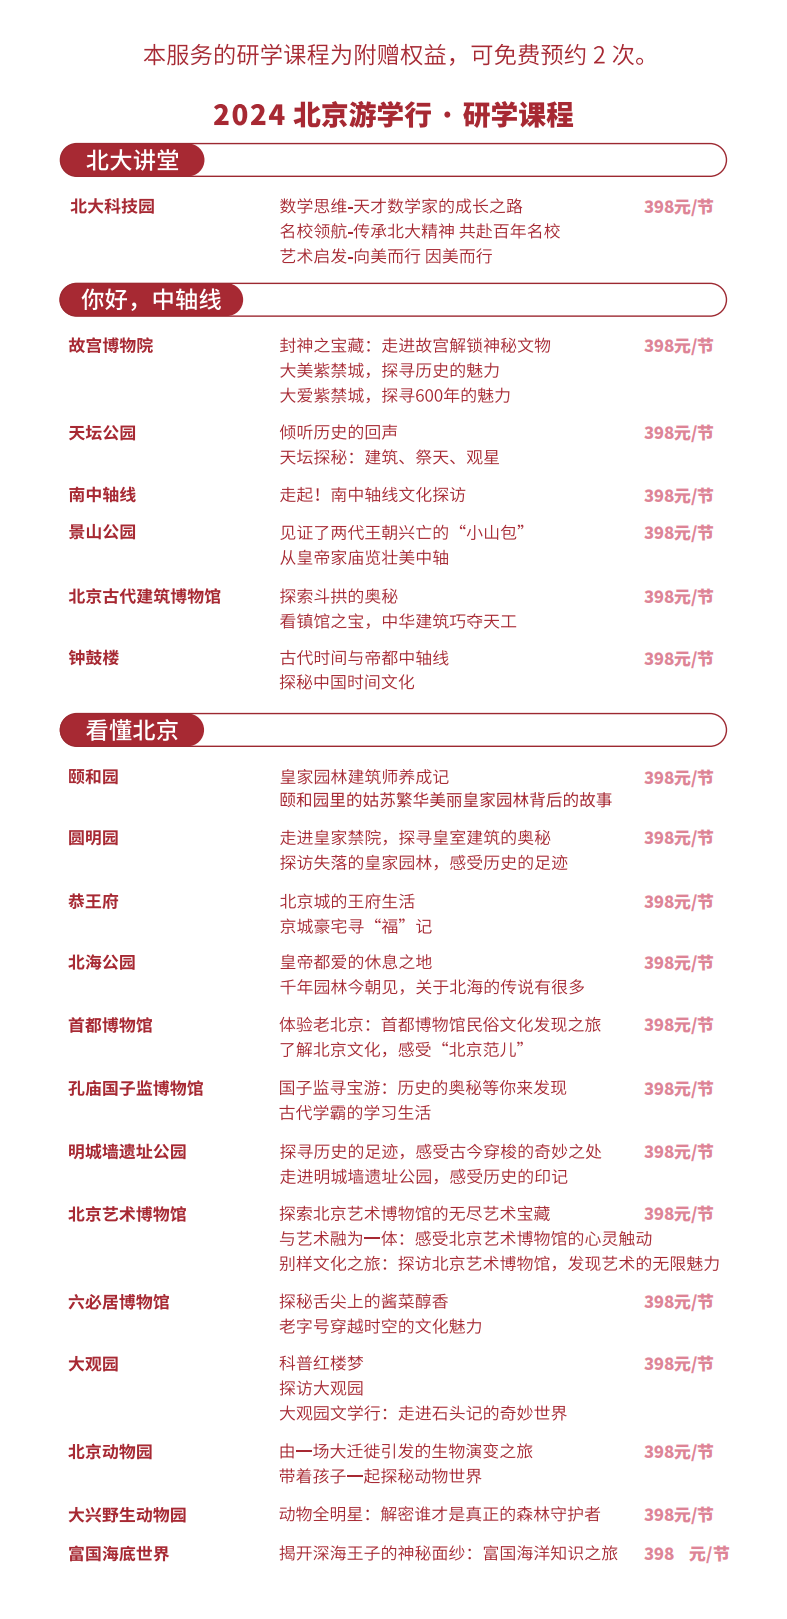 2024 北 京 游 学 行 · 景 区 卡